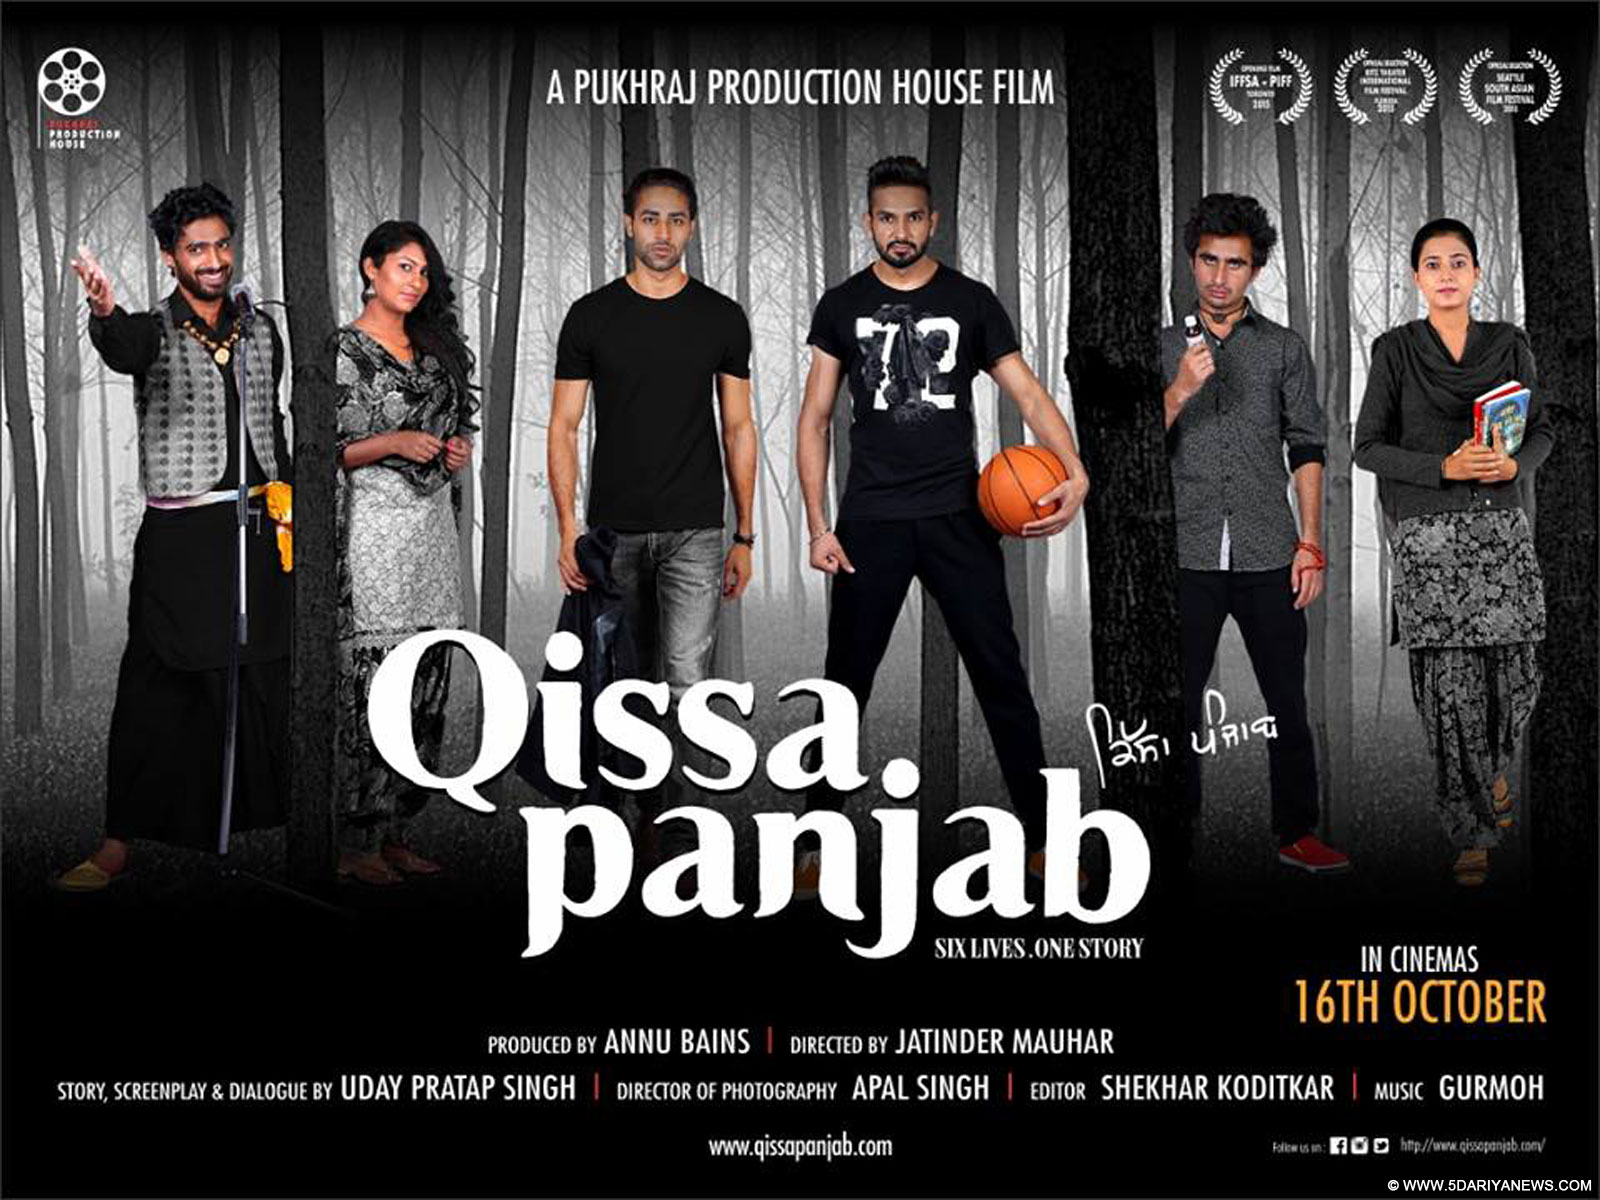 Punjabi Film Qissa Panjab To Release On 16th October, 2015